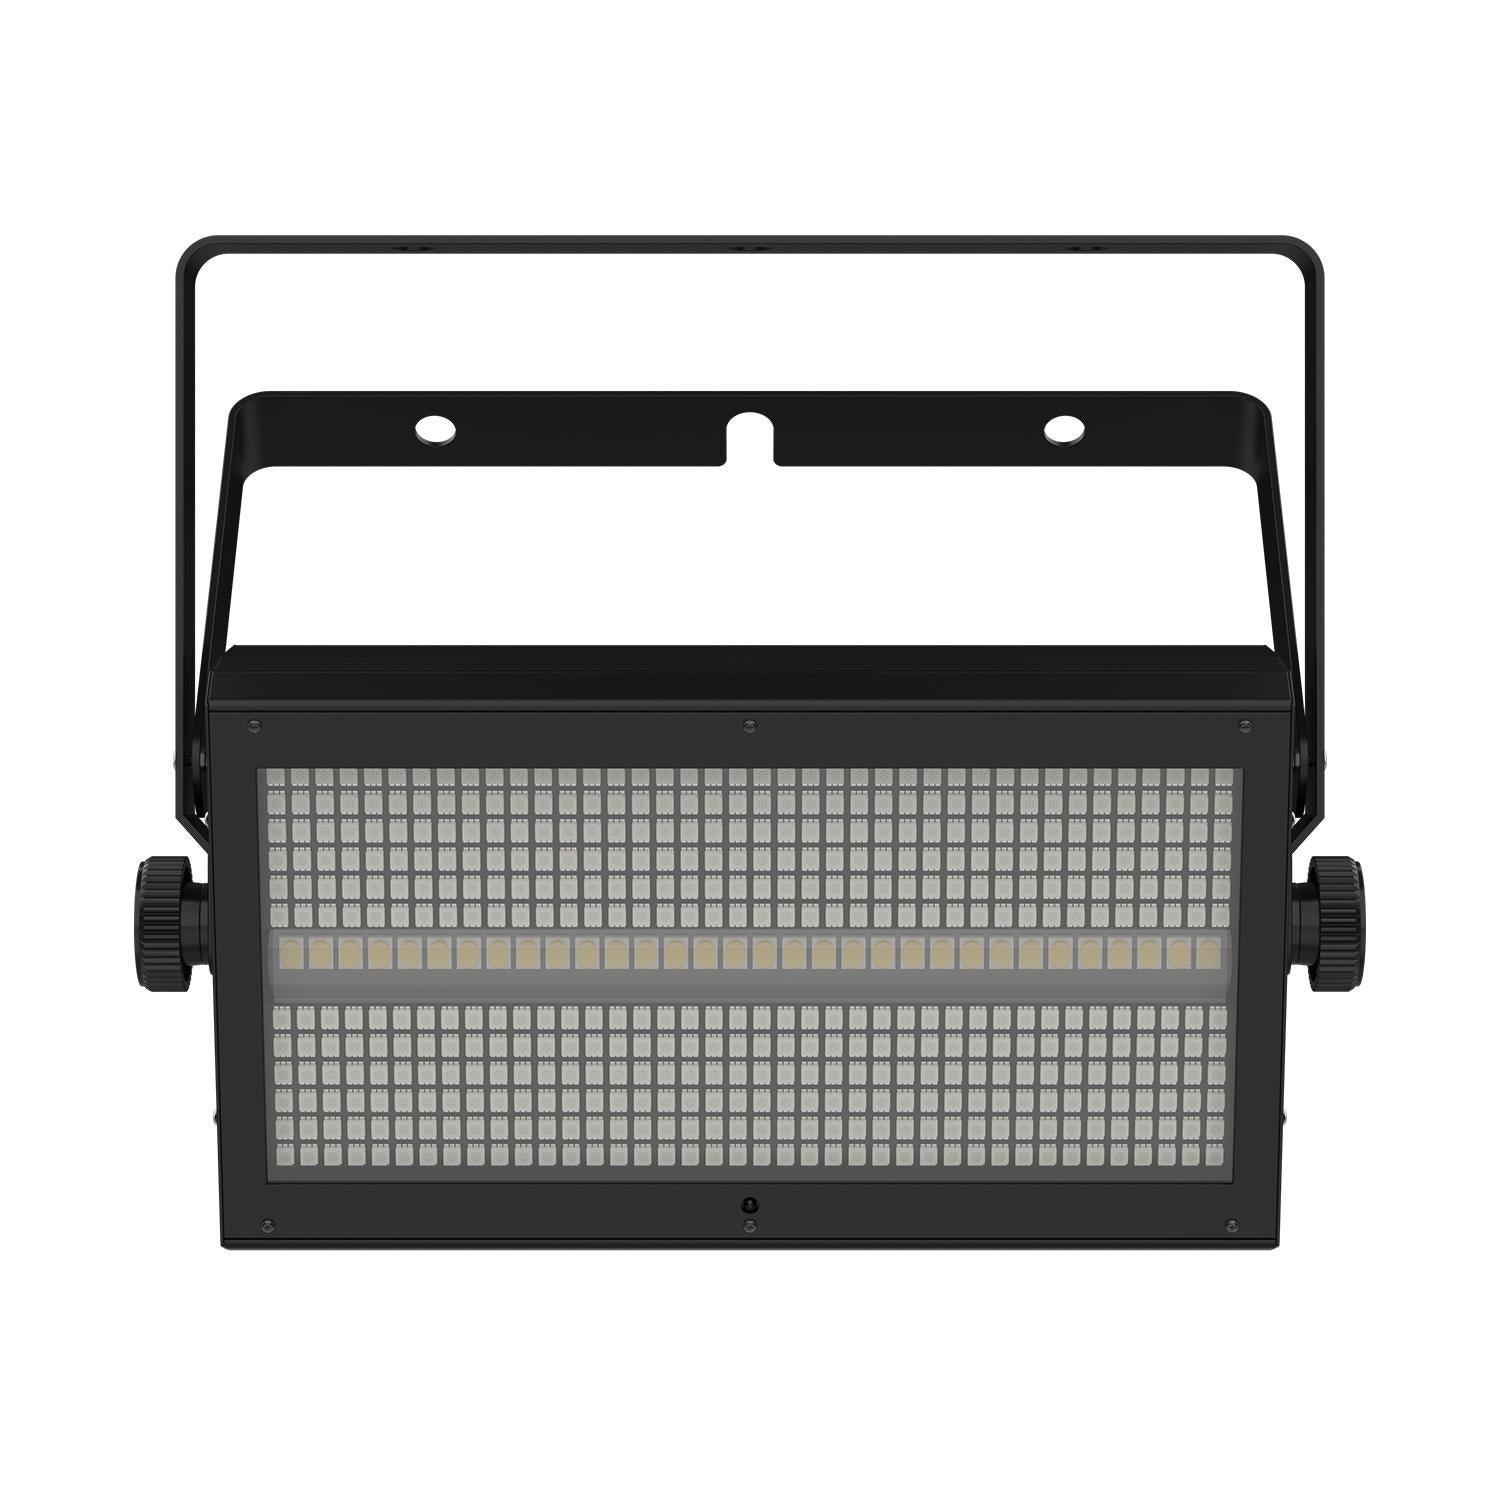 2 x Chauvet DJ Shocker Panel FX LED Panel with DMX Cable - DY Pro Audio